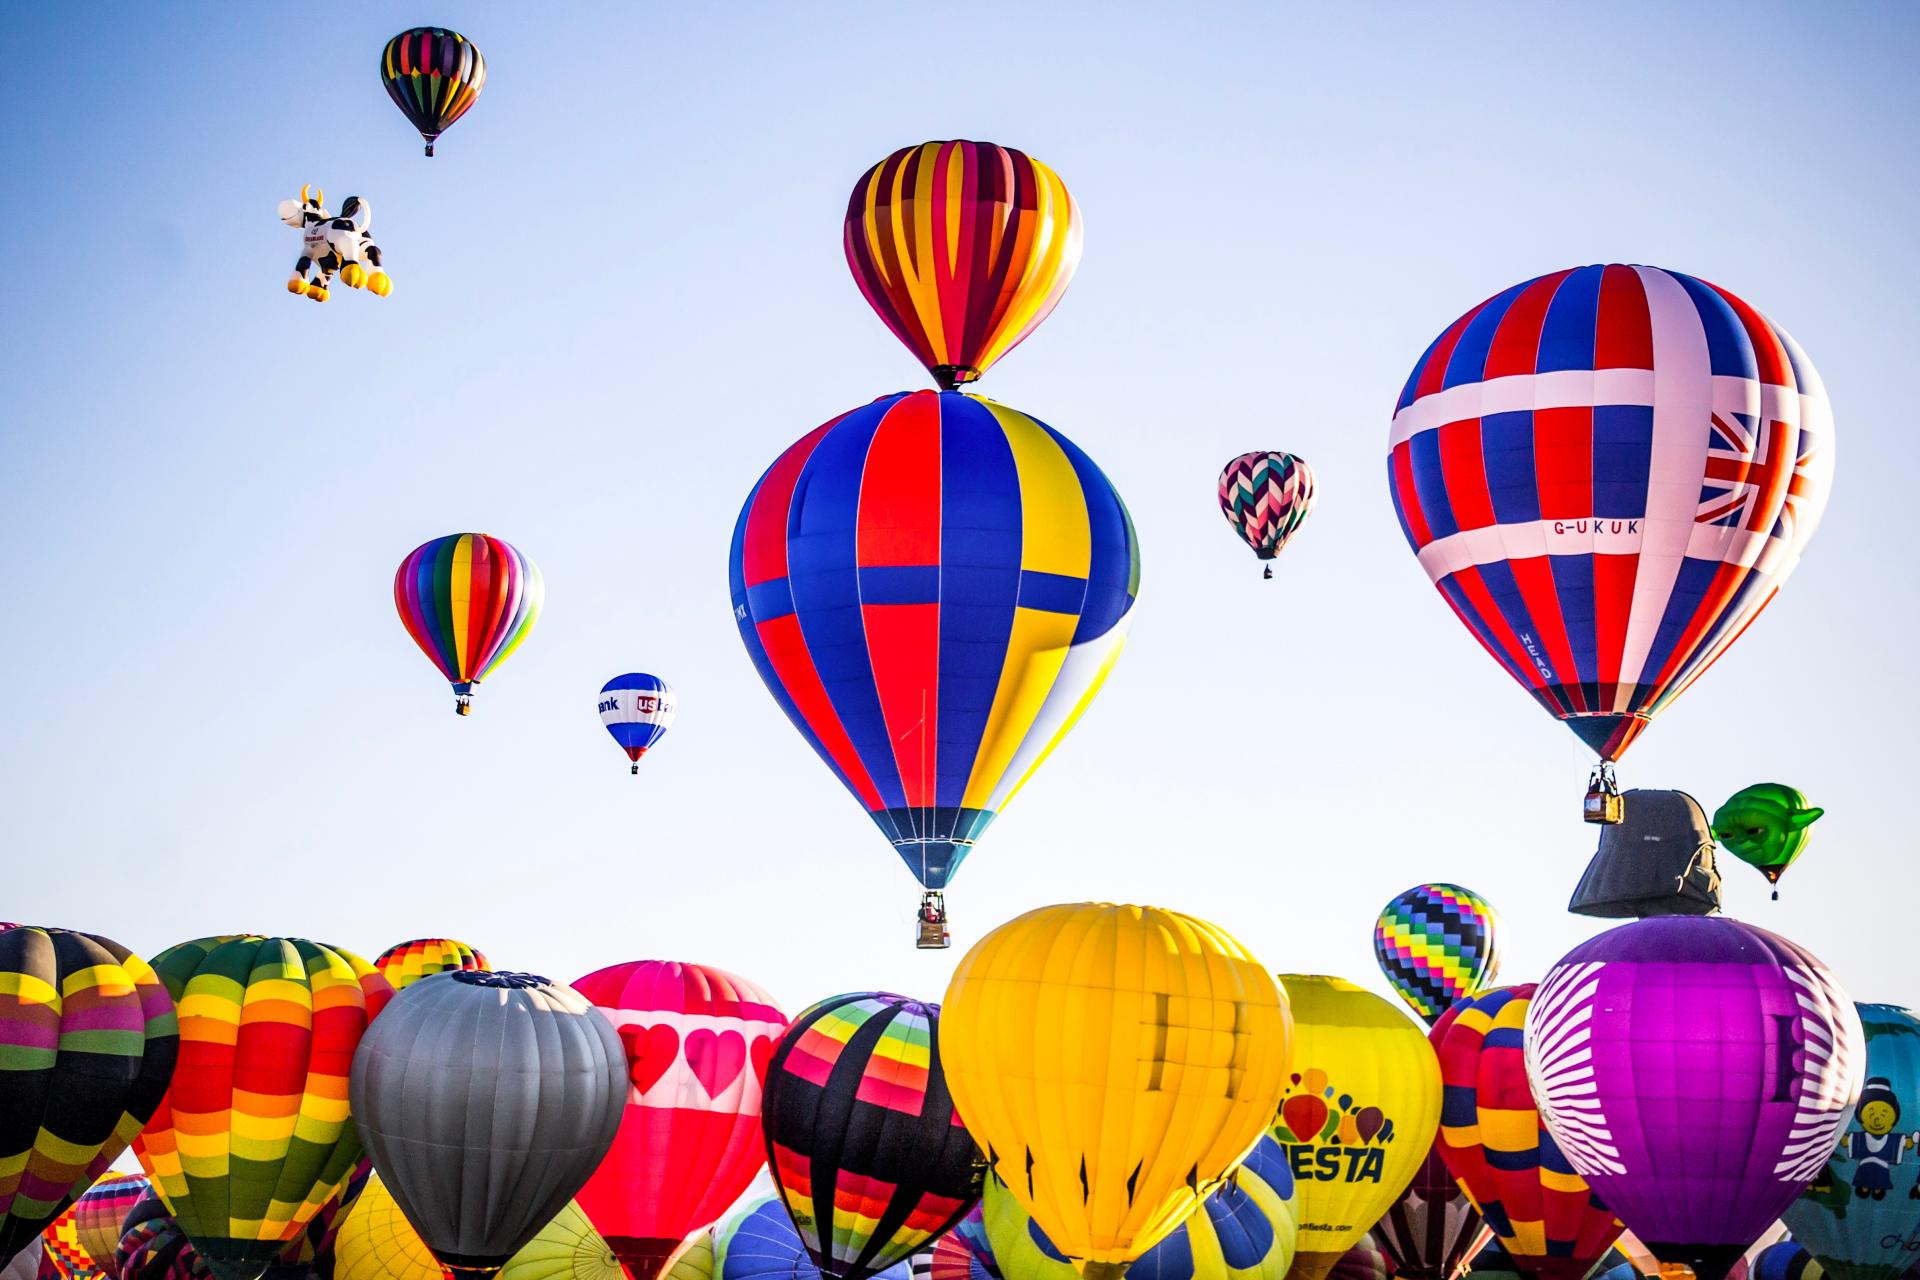 Hot Air Balloon Festivals Around The World